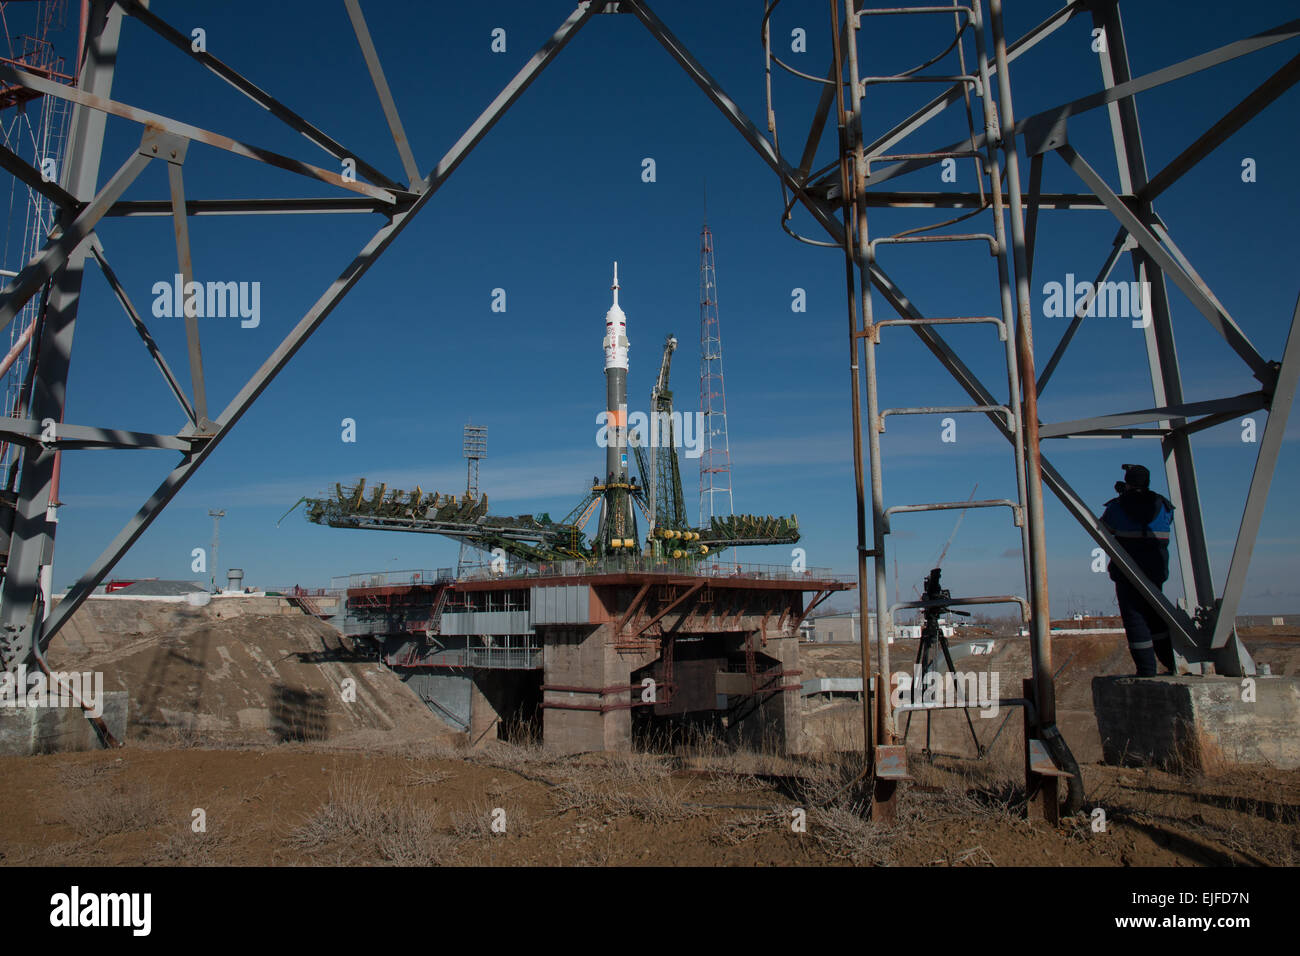 Weltraumbahnhof Baikonur in Kasachstan. 25. März 2015. Das Raumschiff Sojus TMA - 16M ist mit dem Zug auf der Startrampe in Baikonur Kosmodrom 25. März 2015 in Kasachstan ausgerollt. Start der Sojus Rakete ist für den 28. März geplant und führt Expedition 43 Besatzung der internationalen Raumstation ISS. Stockfoto